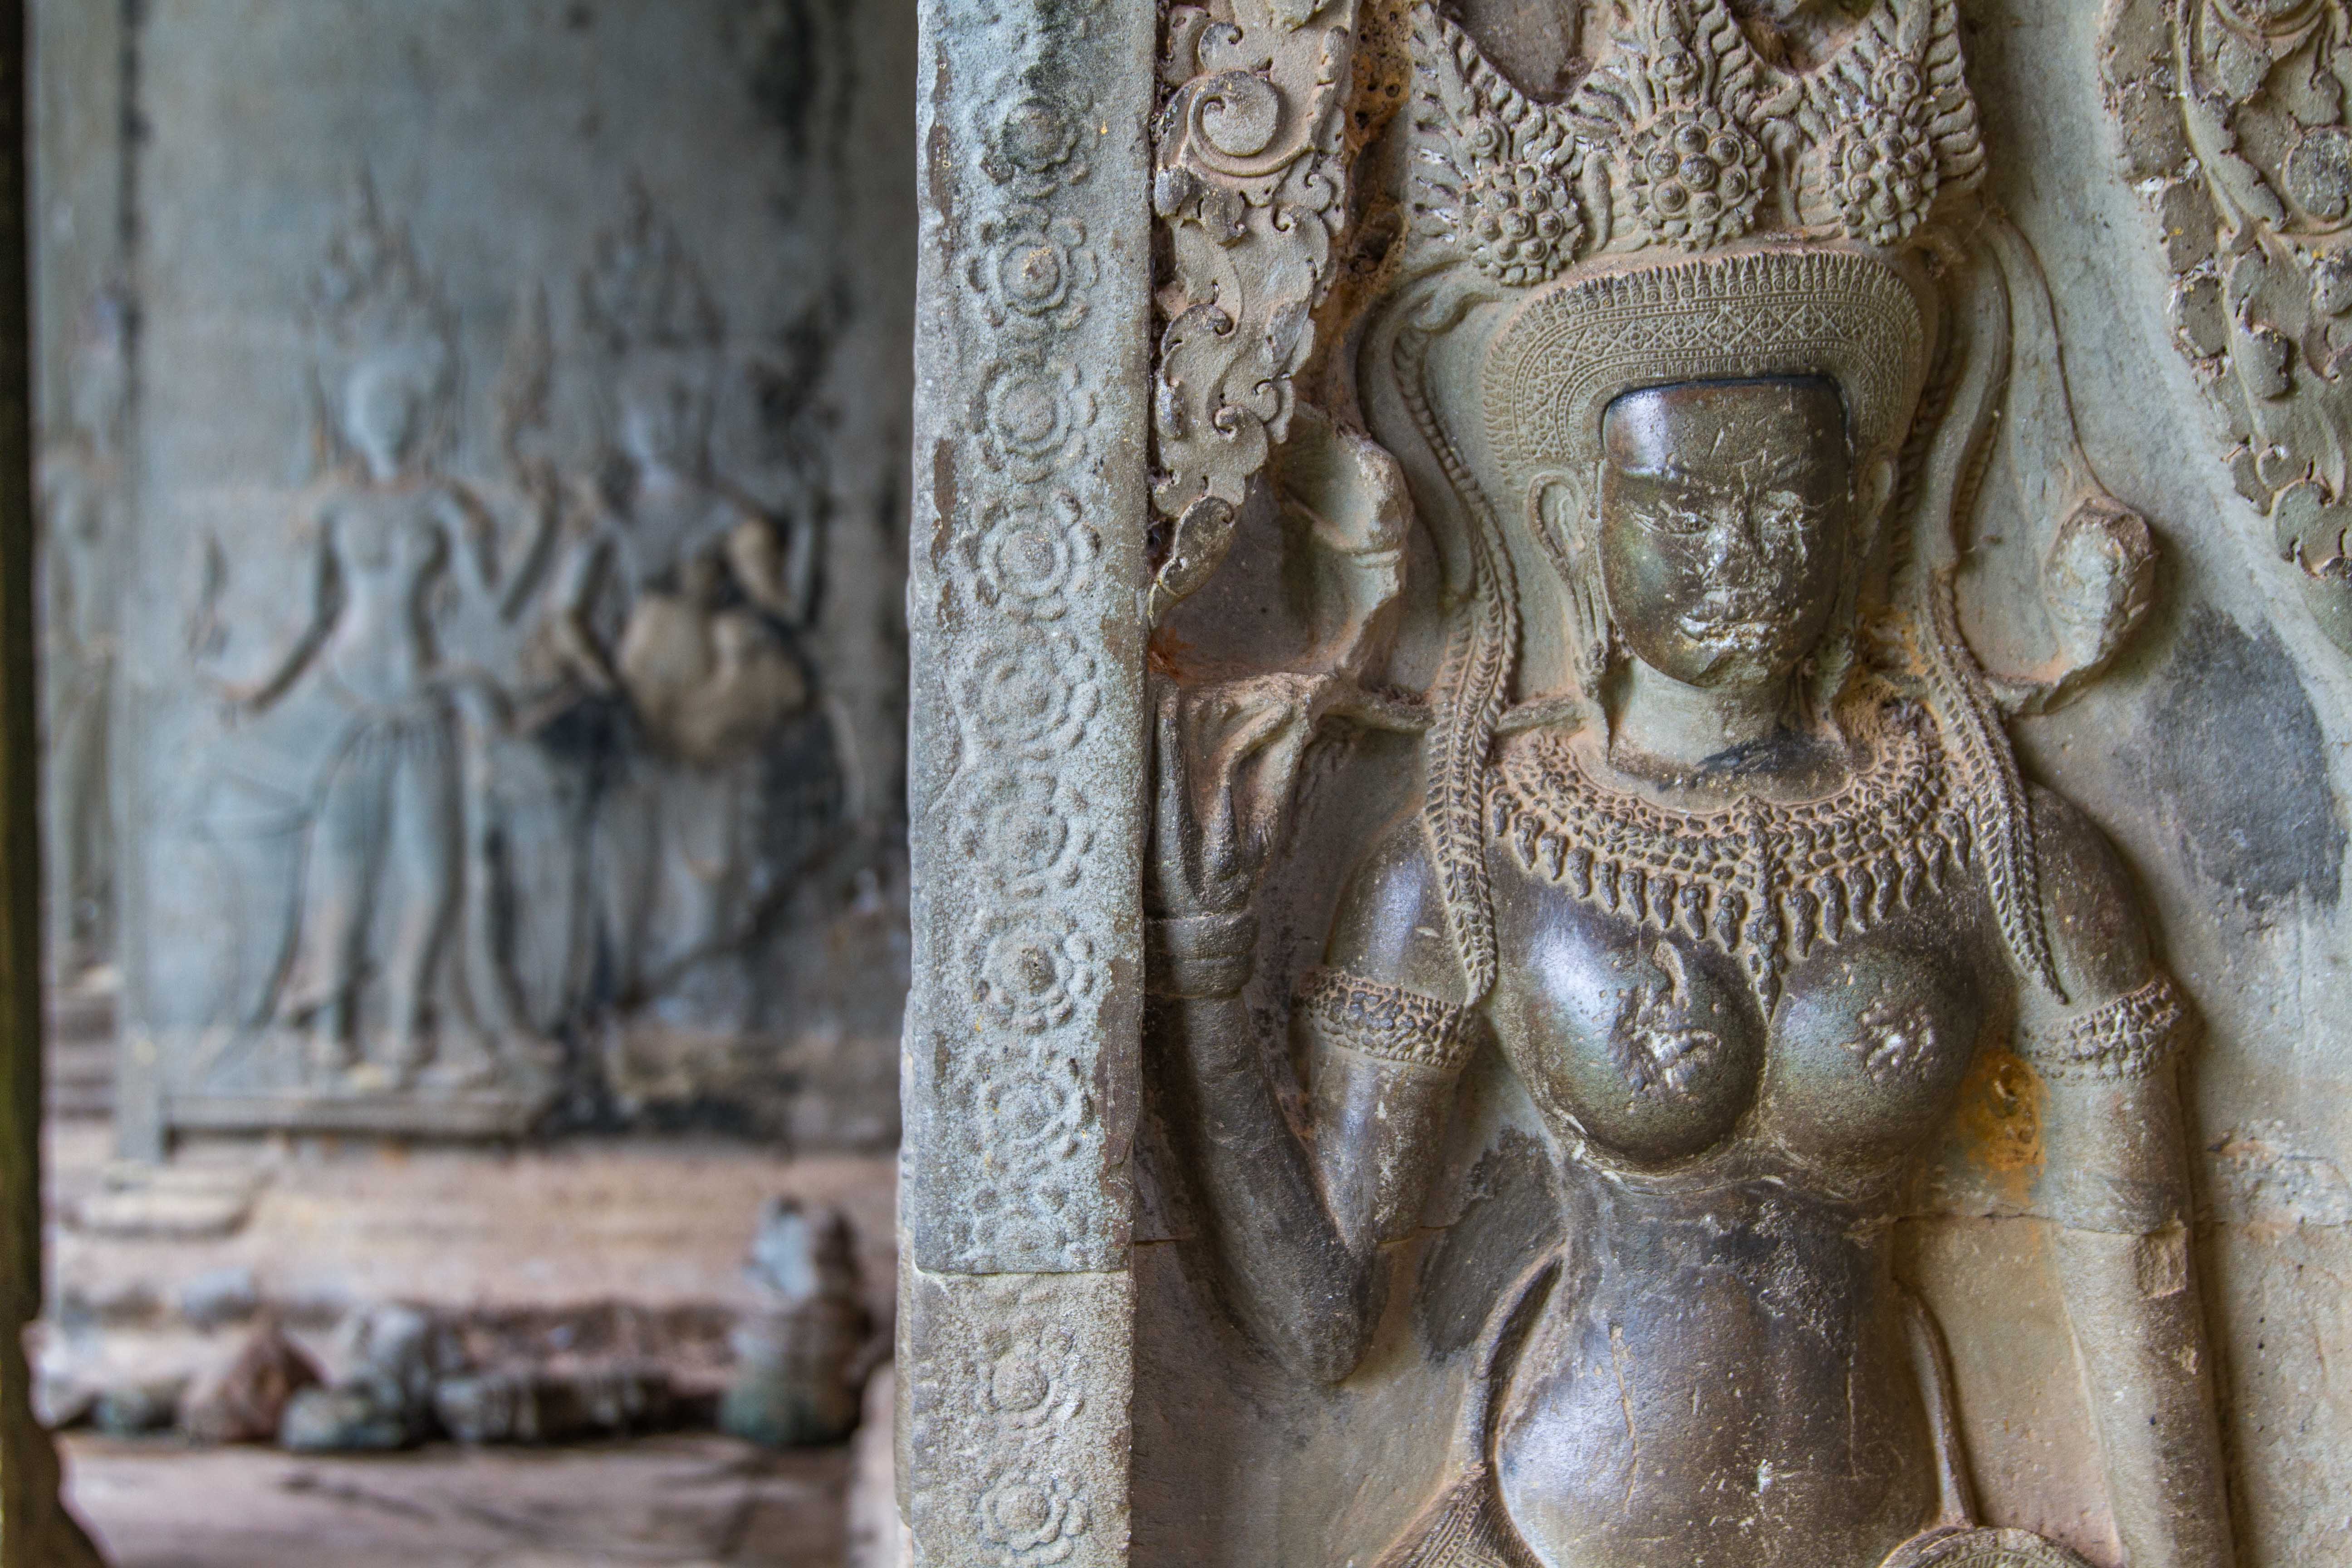 Females Sculptures at Angkor Wat Cambodia